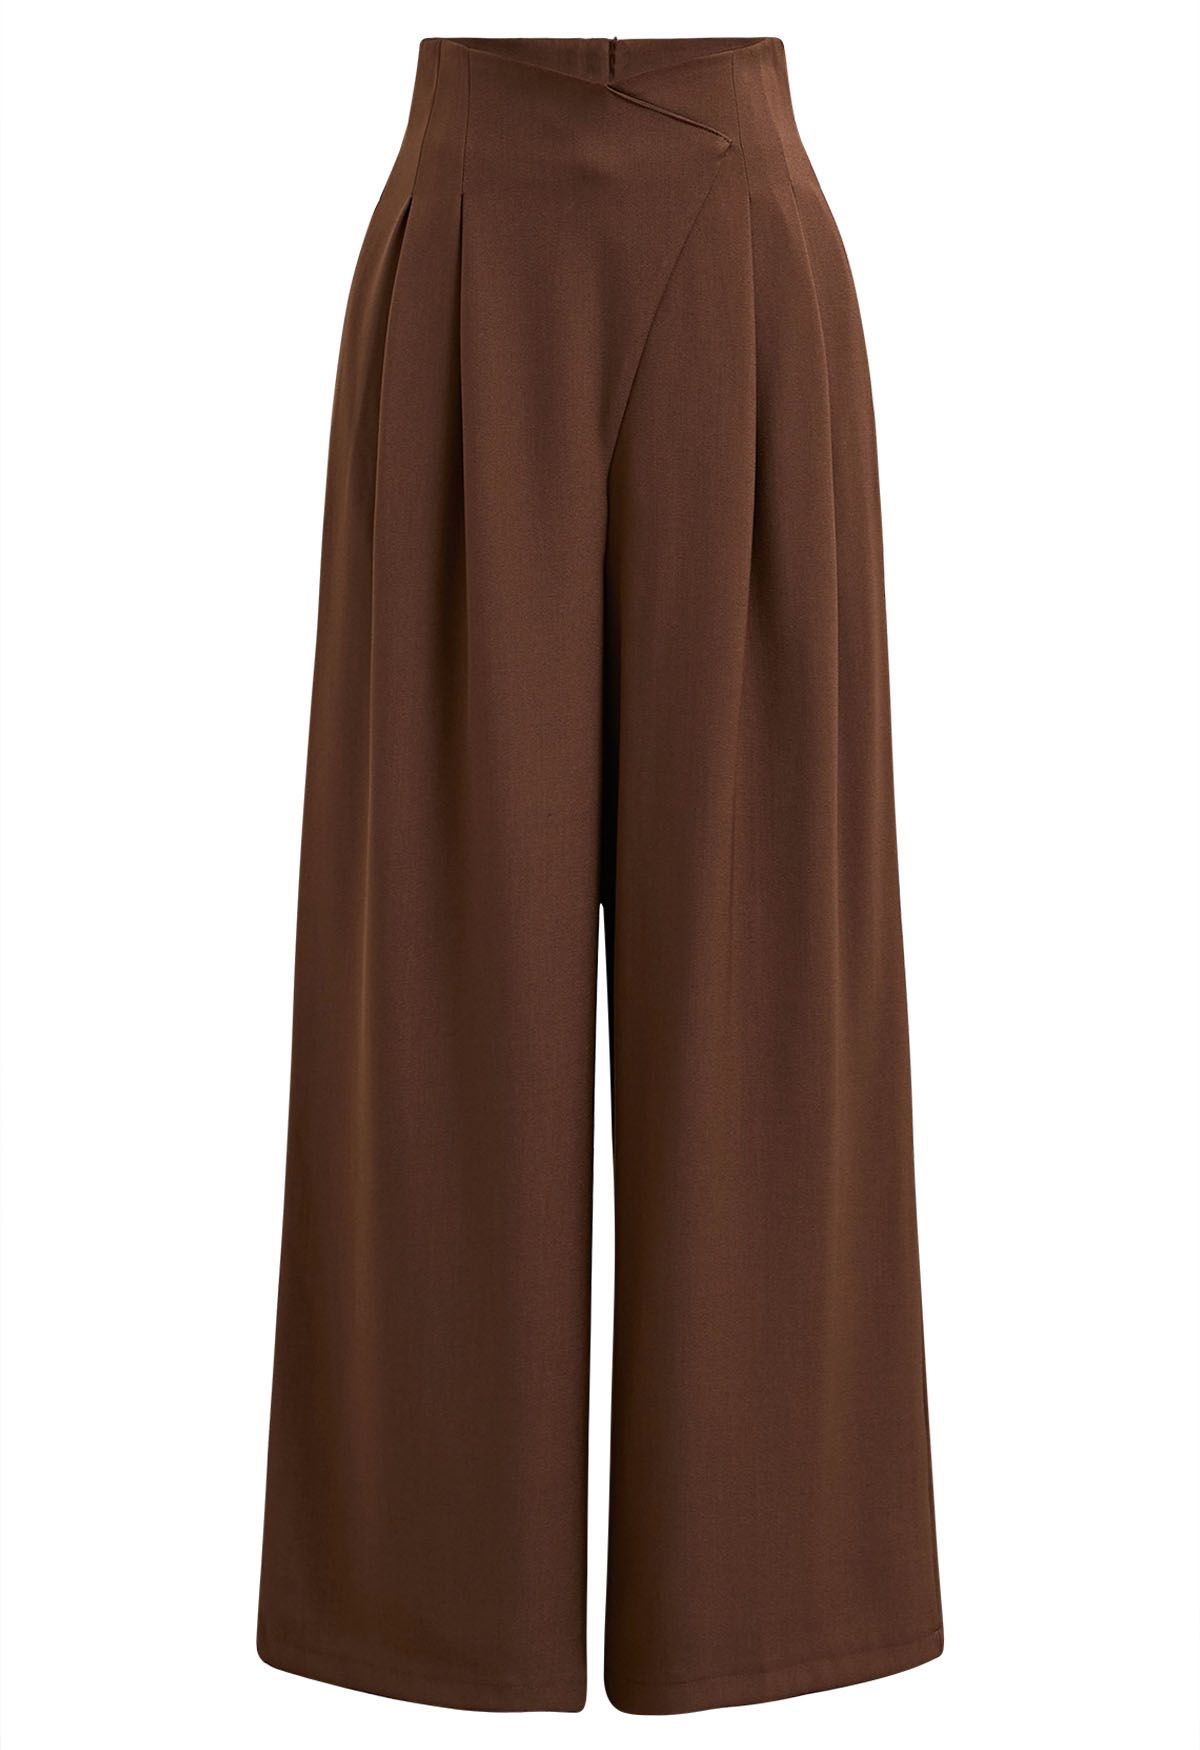 Pantalones rectos plisados con cintura cruzada en color caramelo